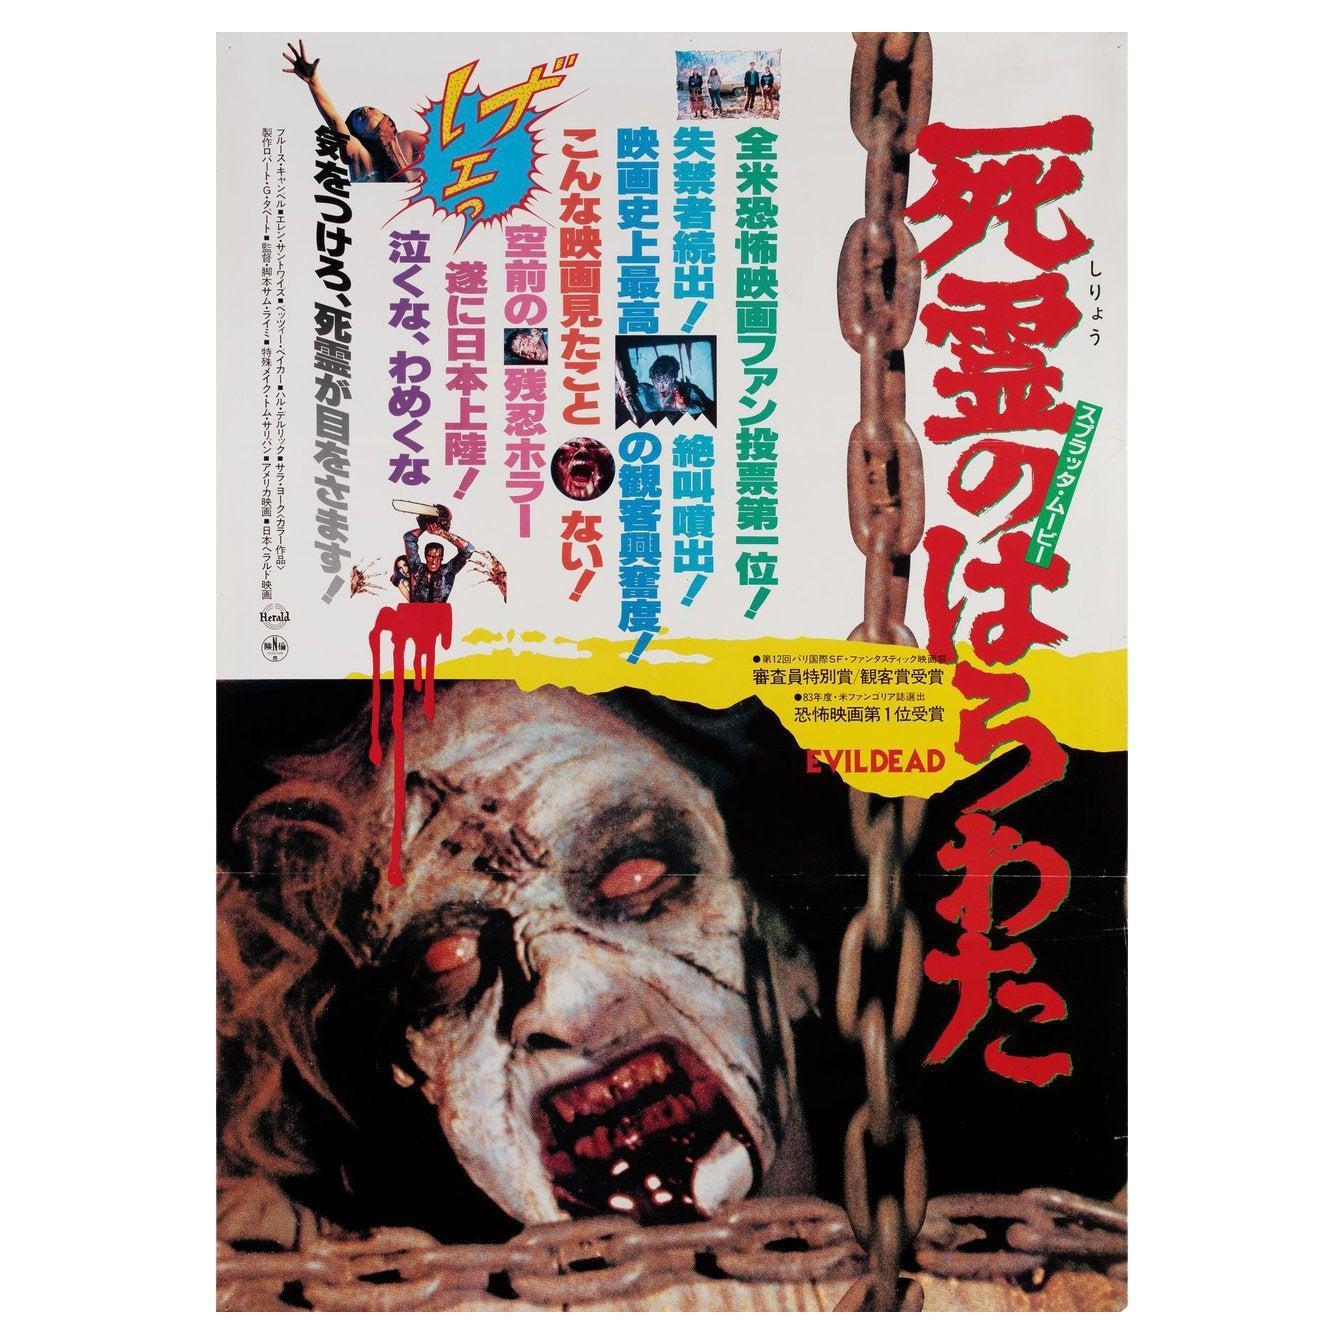 The Evil Dead 1984 Japanese B2 Film Poster